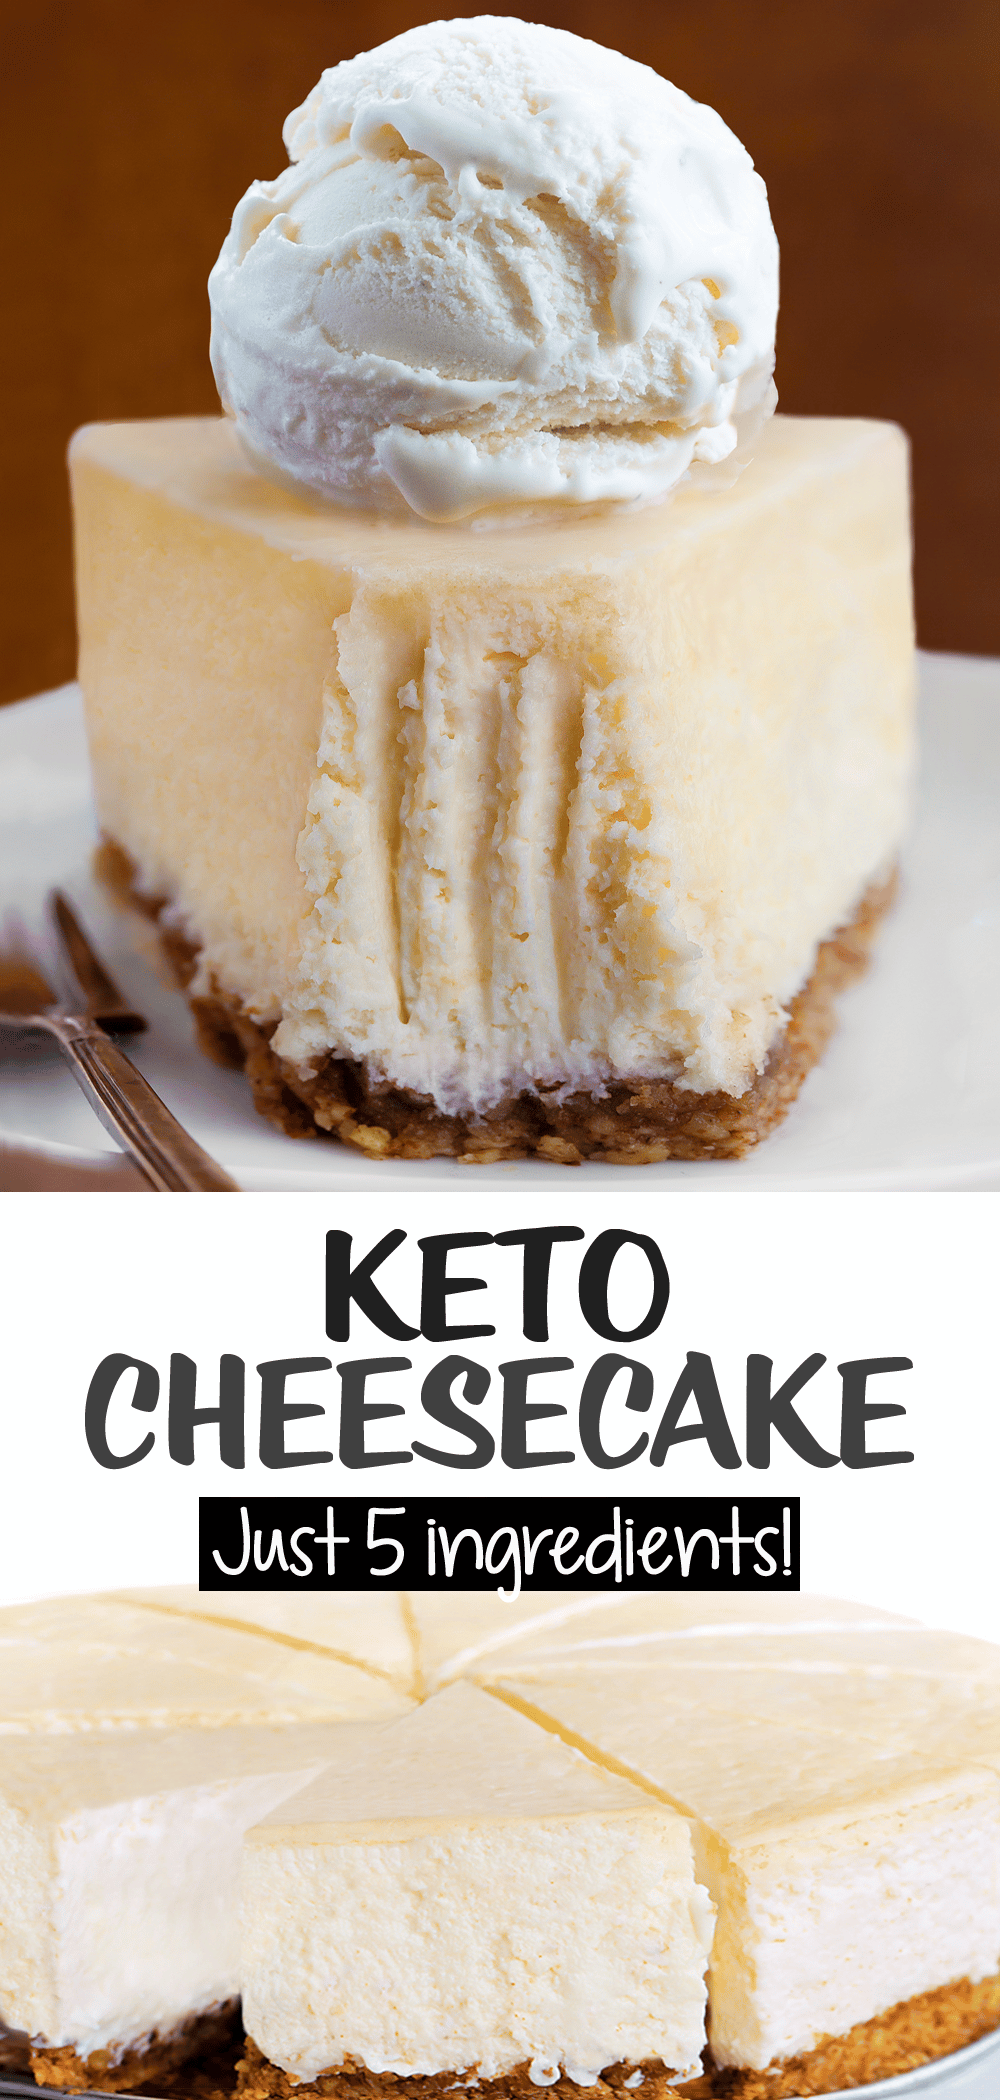 Receta Keto Cheesecake ¡Solo 5 ingredientes